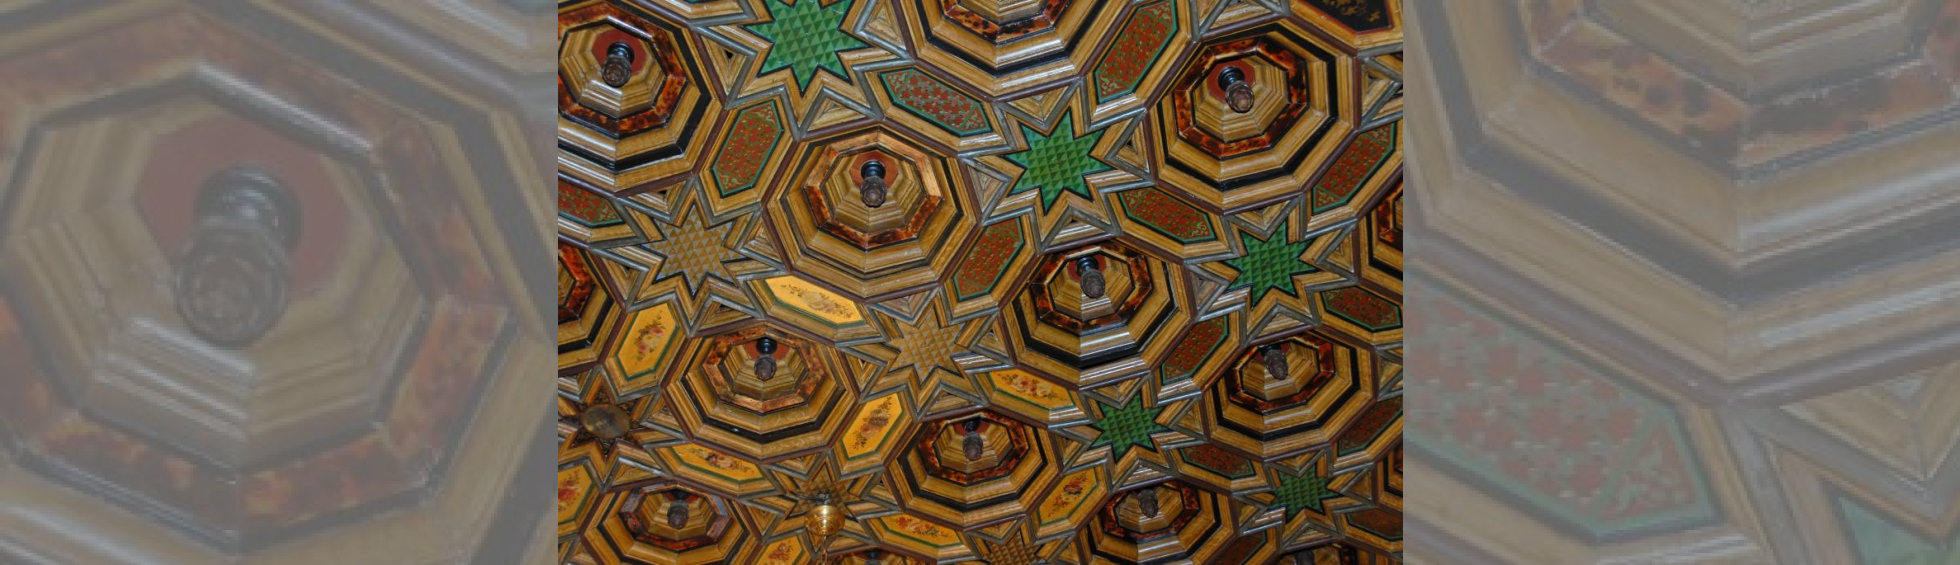 Plafond peints à caissons octogonaux avec pomme de pin au centre, étoiles à huit branches aux croisements